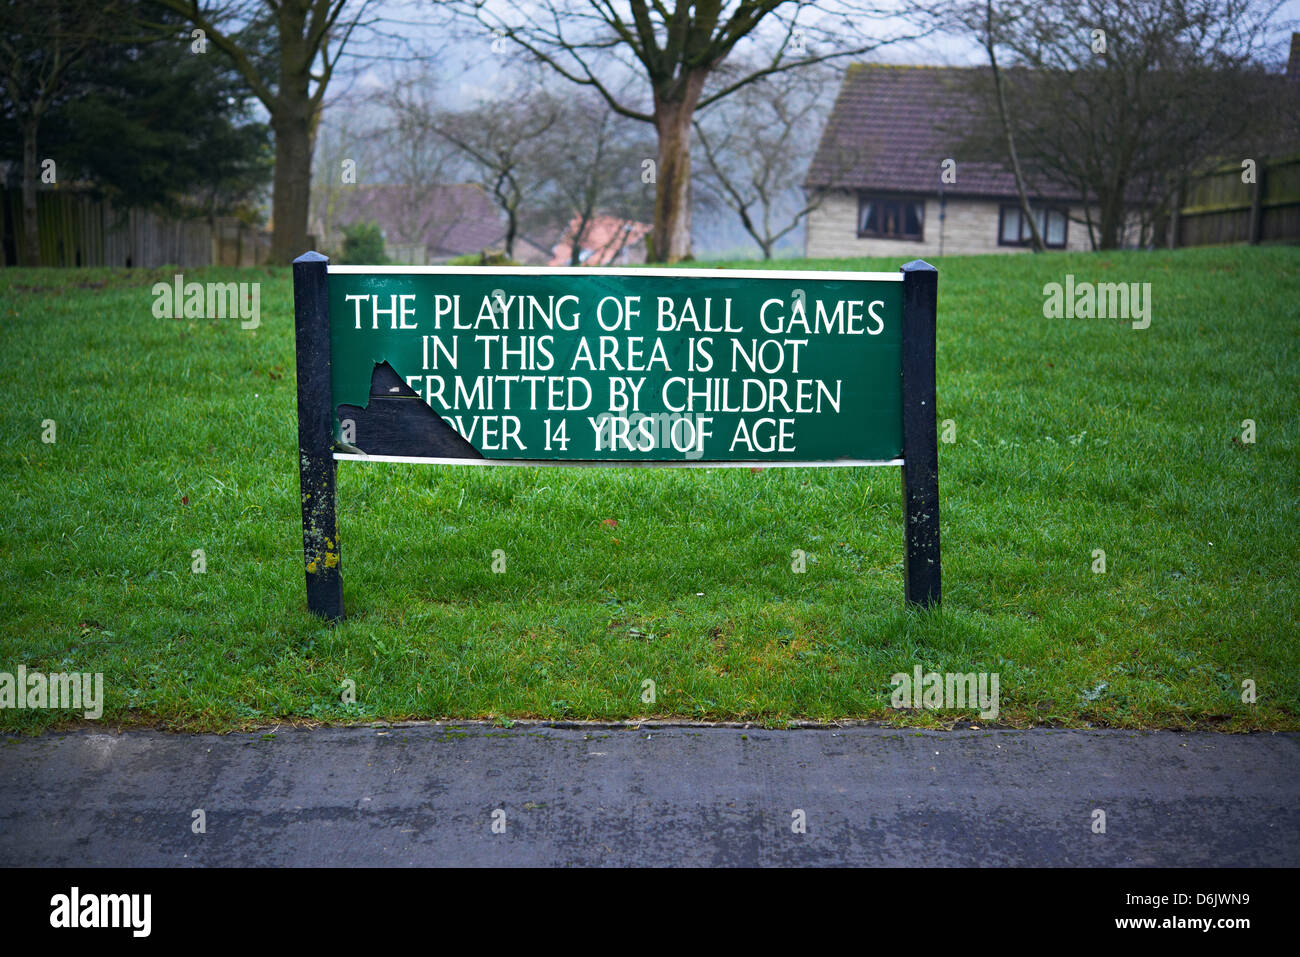 Un panneau indiquant le jeu de jeux de balles dans ce domaine n'est pas permise par les enfants de plus de 14 ans Banque D'Images